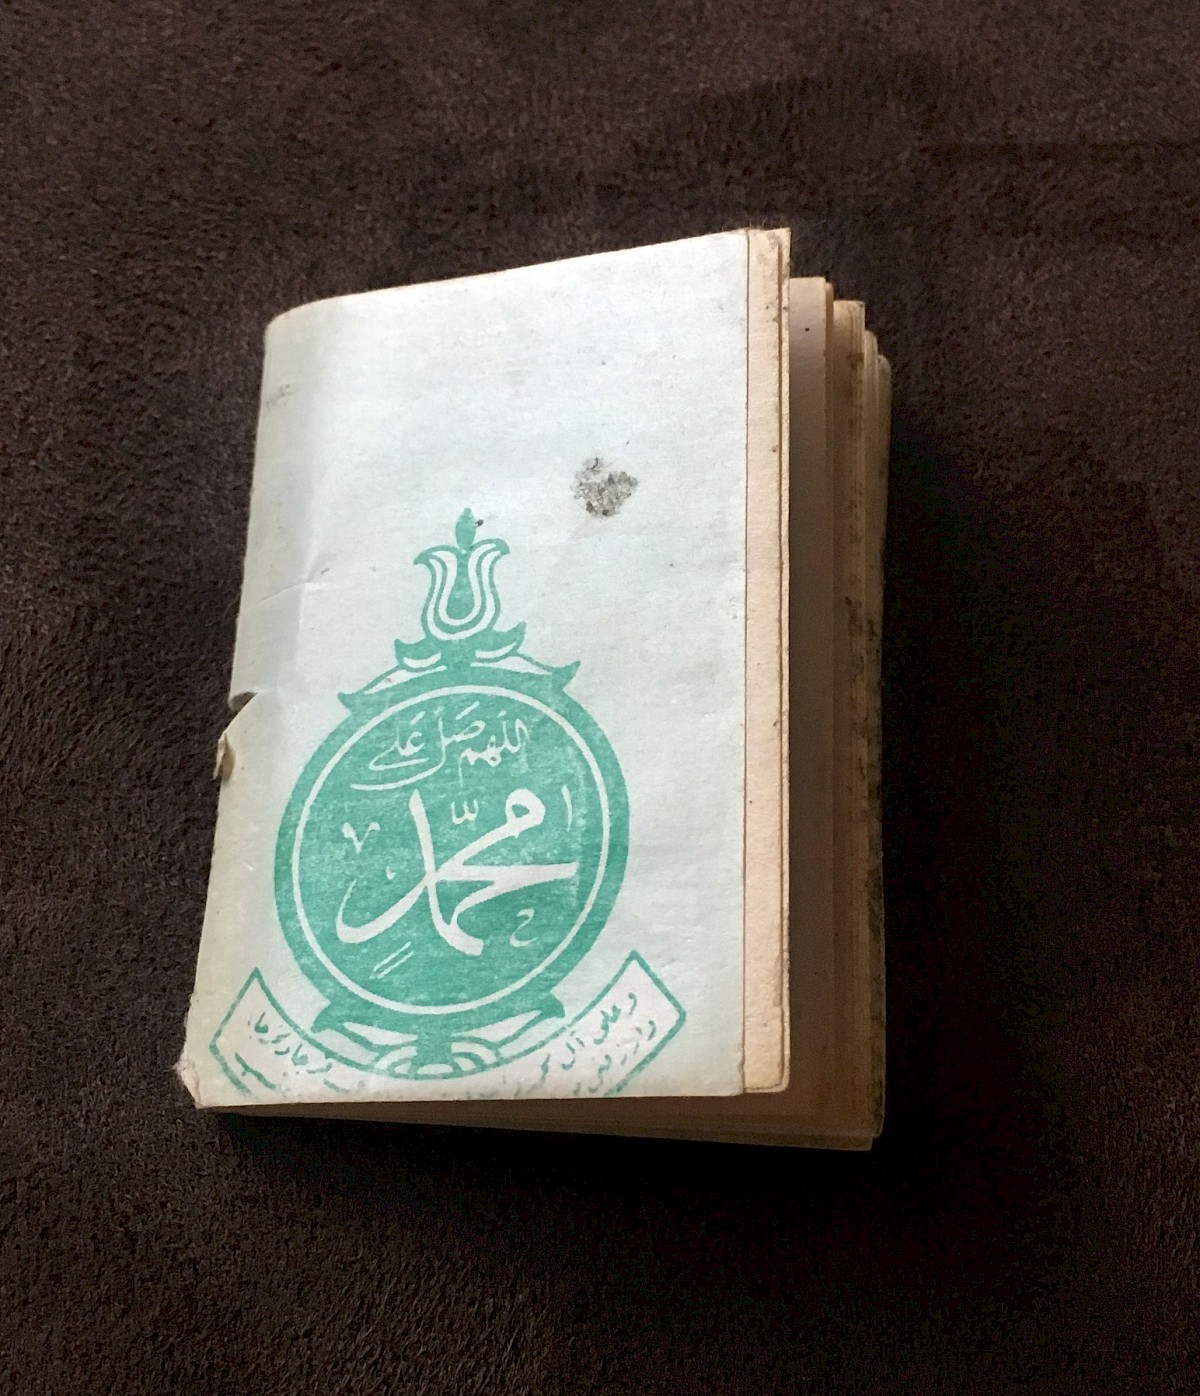 the back of the prayer book @Monzer Alsakrit 2019